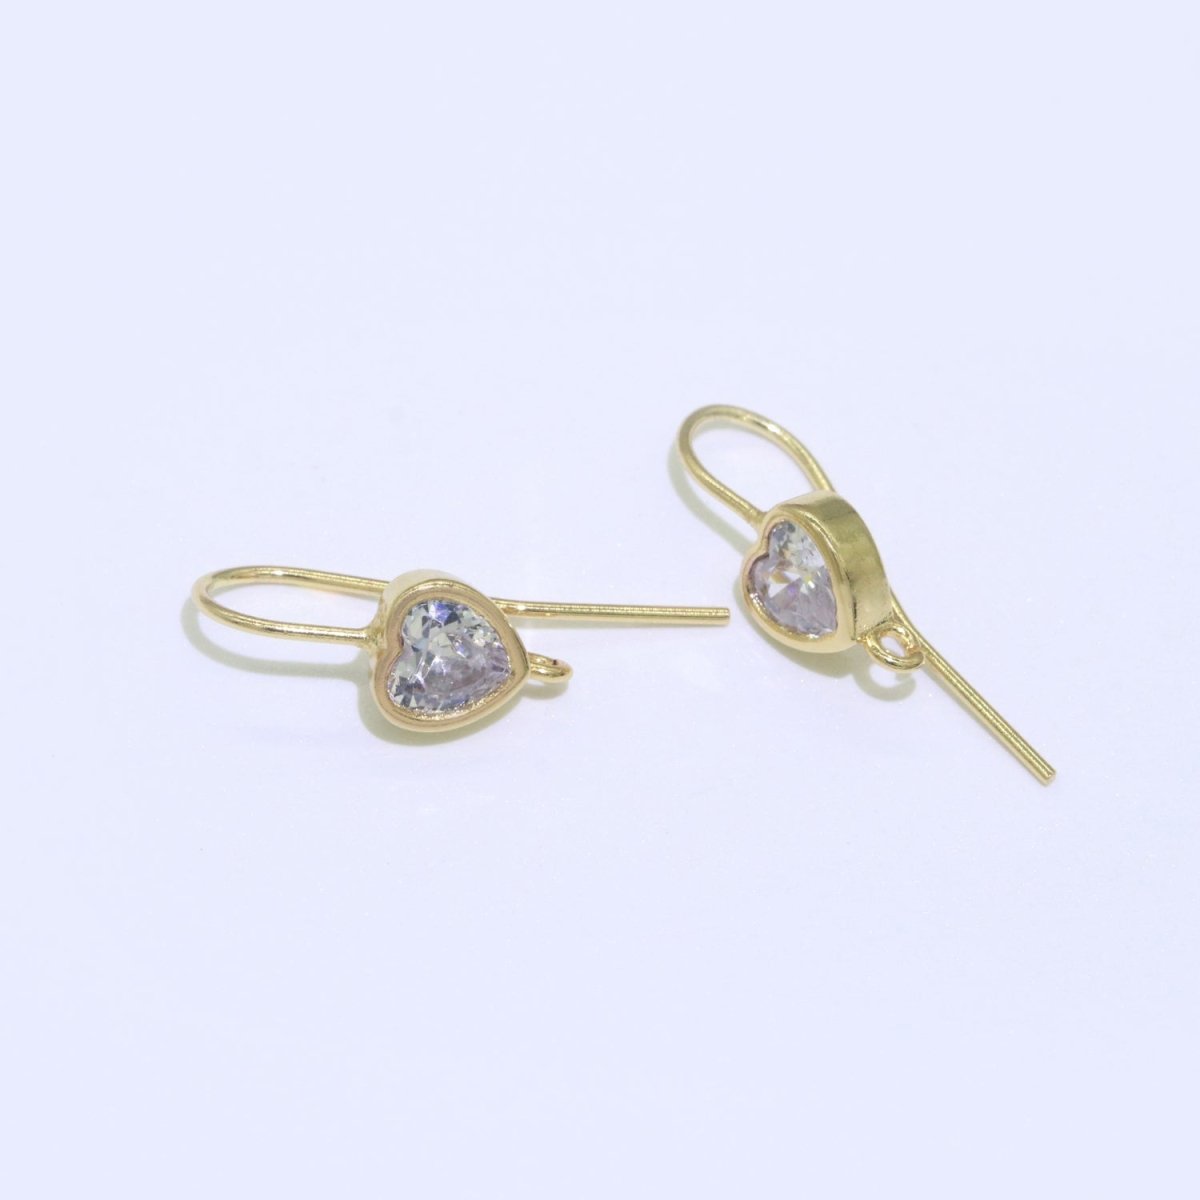 Open Link French Hook Earrings in Gold, Fish Hook Earring Heart CZ Earring Minimalist Jewelry Making Supply L-494 L-495 - DLUXCA